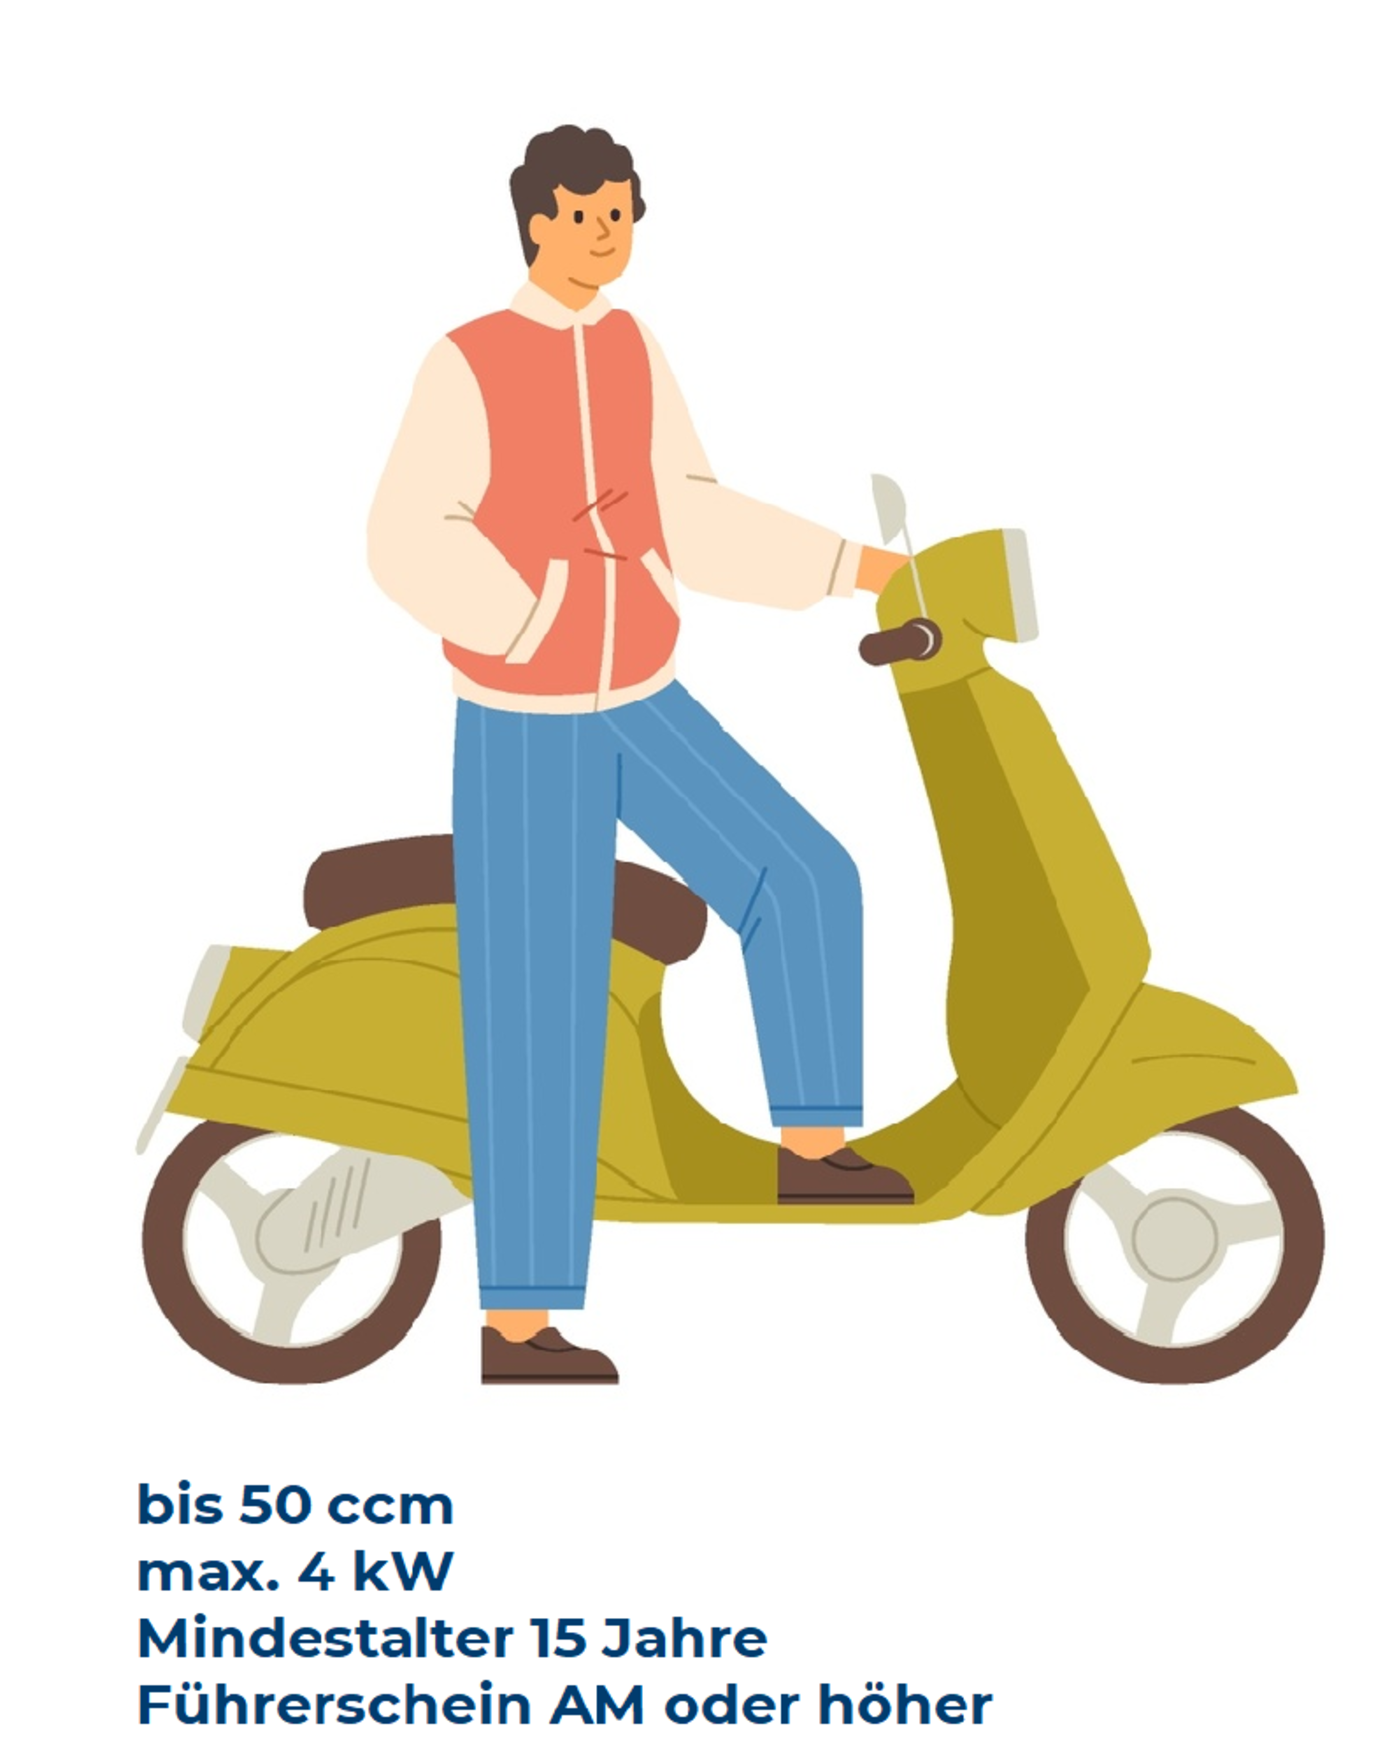 Illustration von einem jungen Mann, der vor einem Moped steht